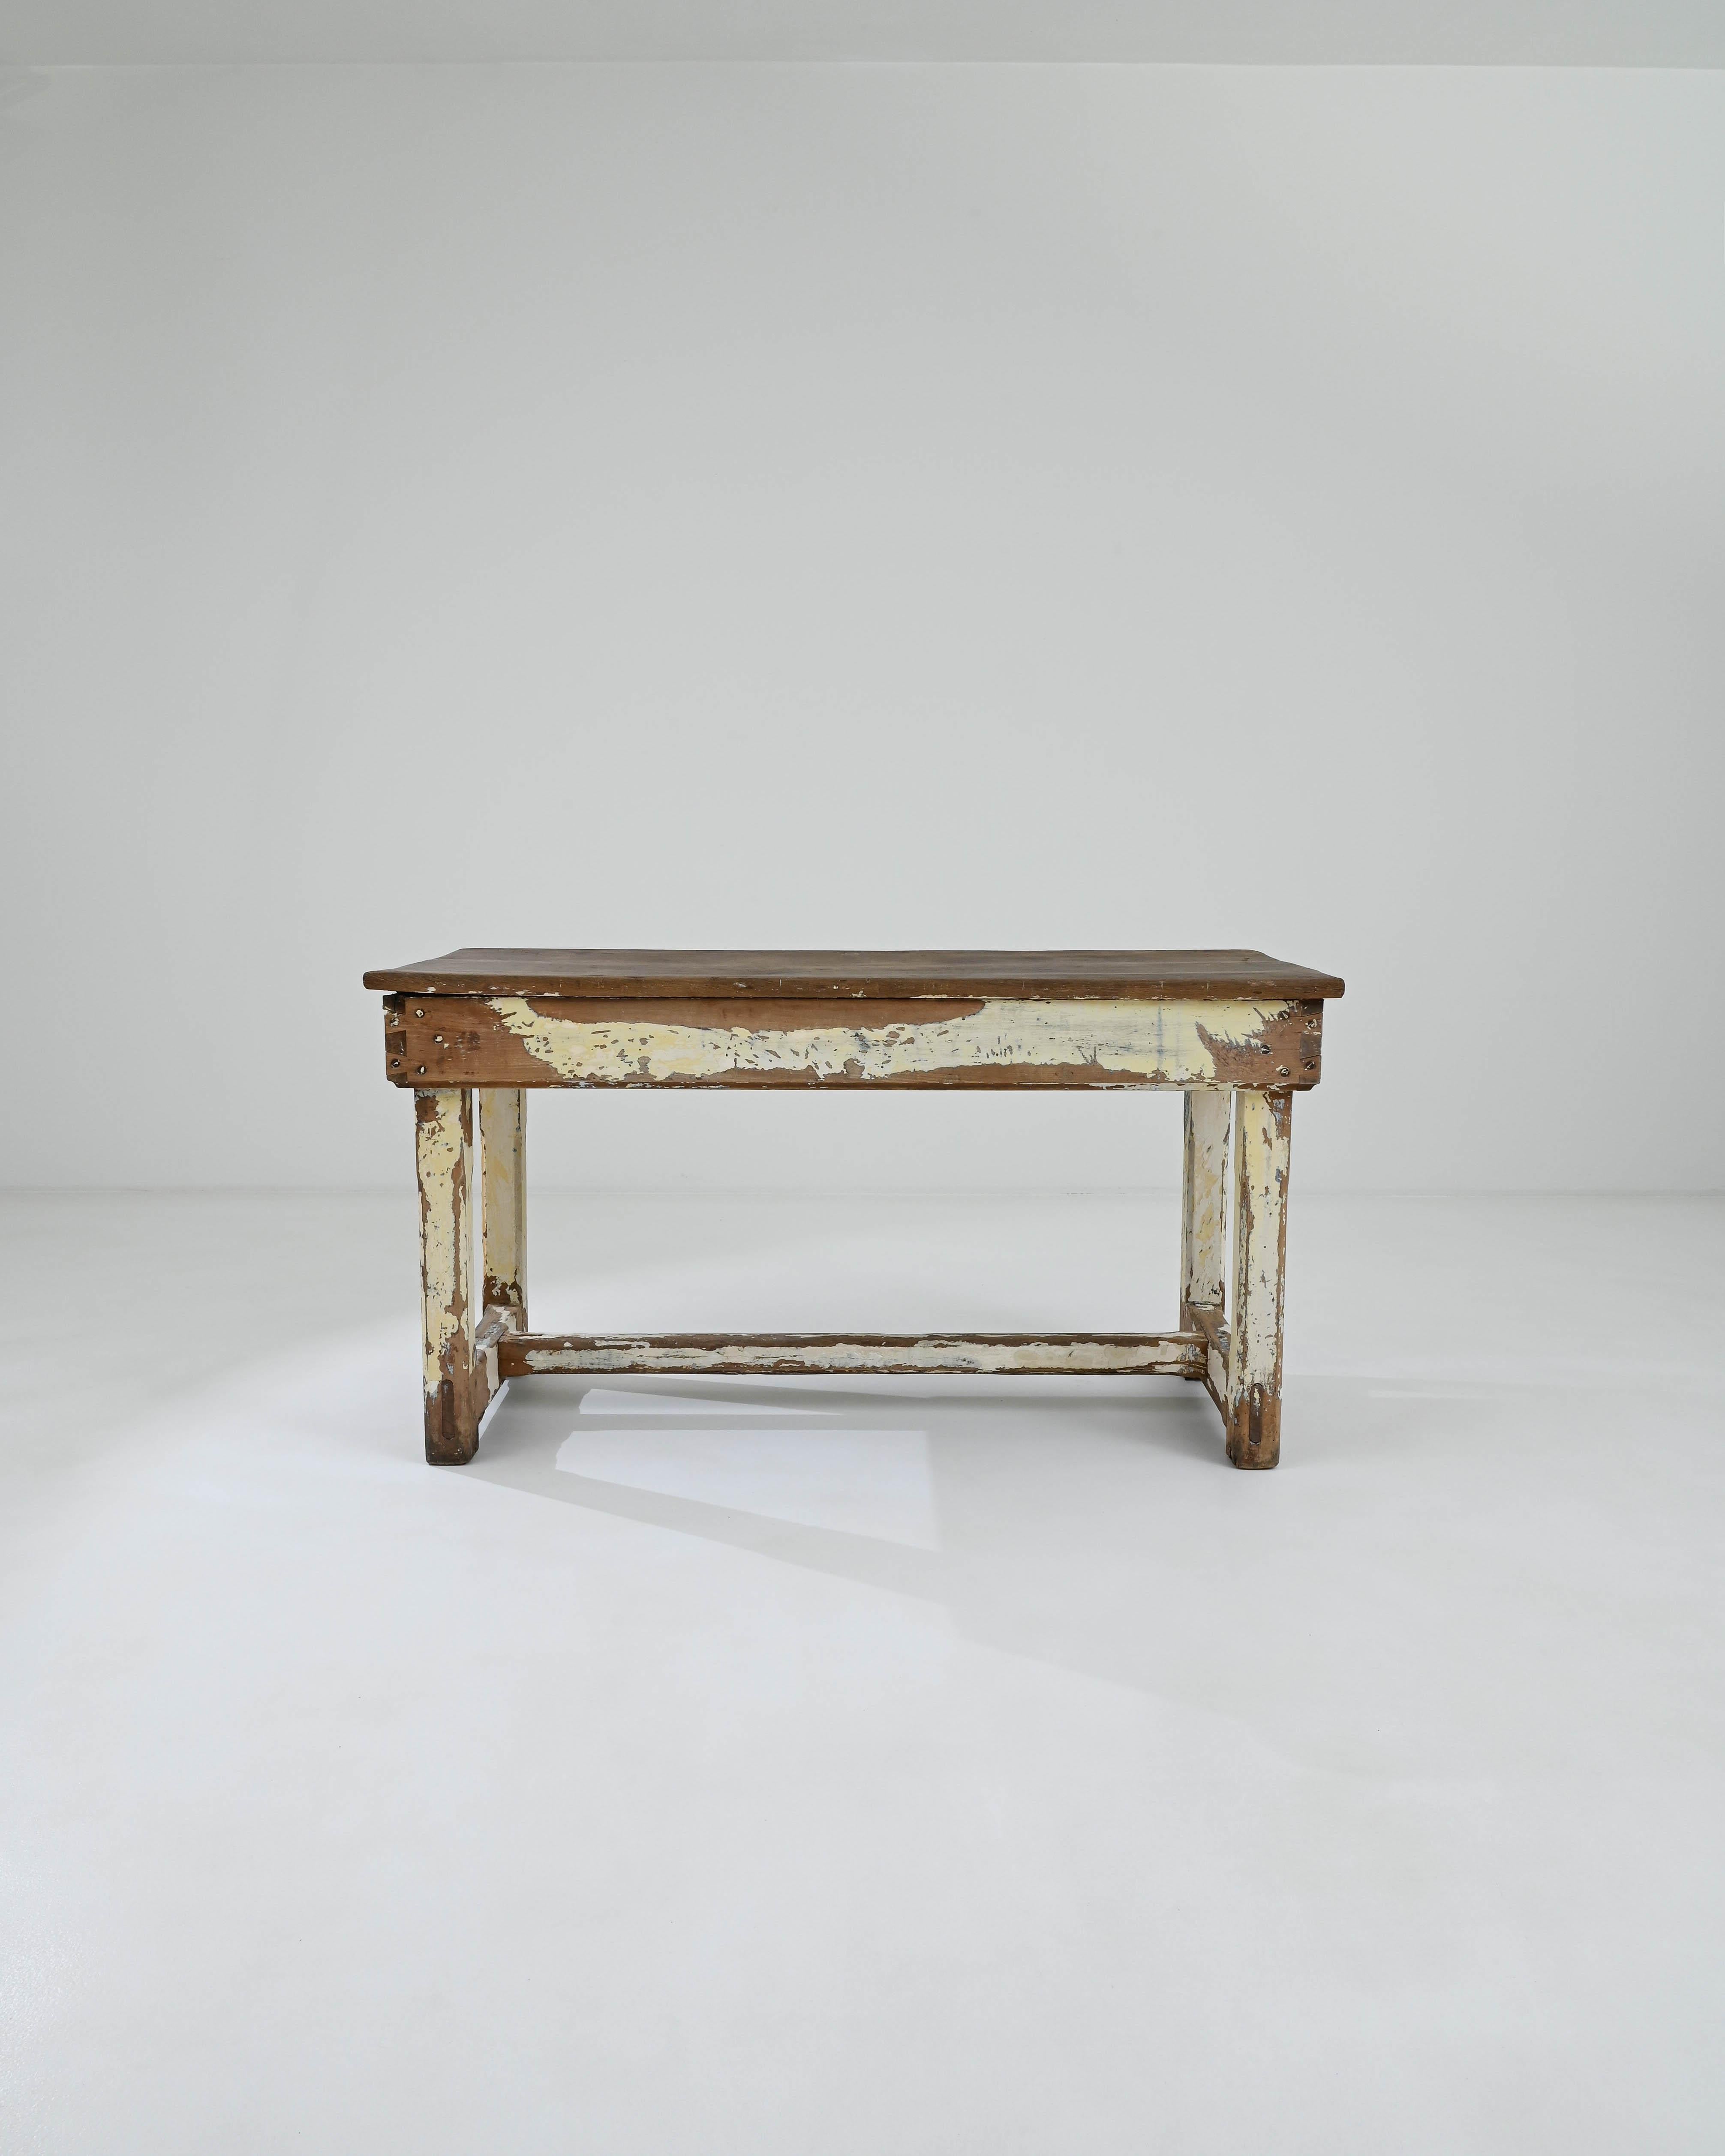 Charmant support pour toutes les formes de travail domestique, cette table en bois provient de France, vers 1900. Cette table classique, touchée par le temps et dramatiquement vieillie, dégage une allure chaleureuse et invite à examiner ses détails